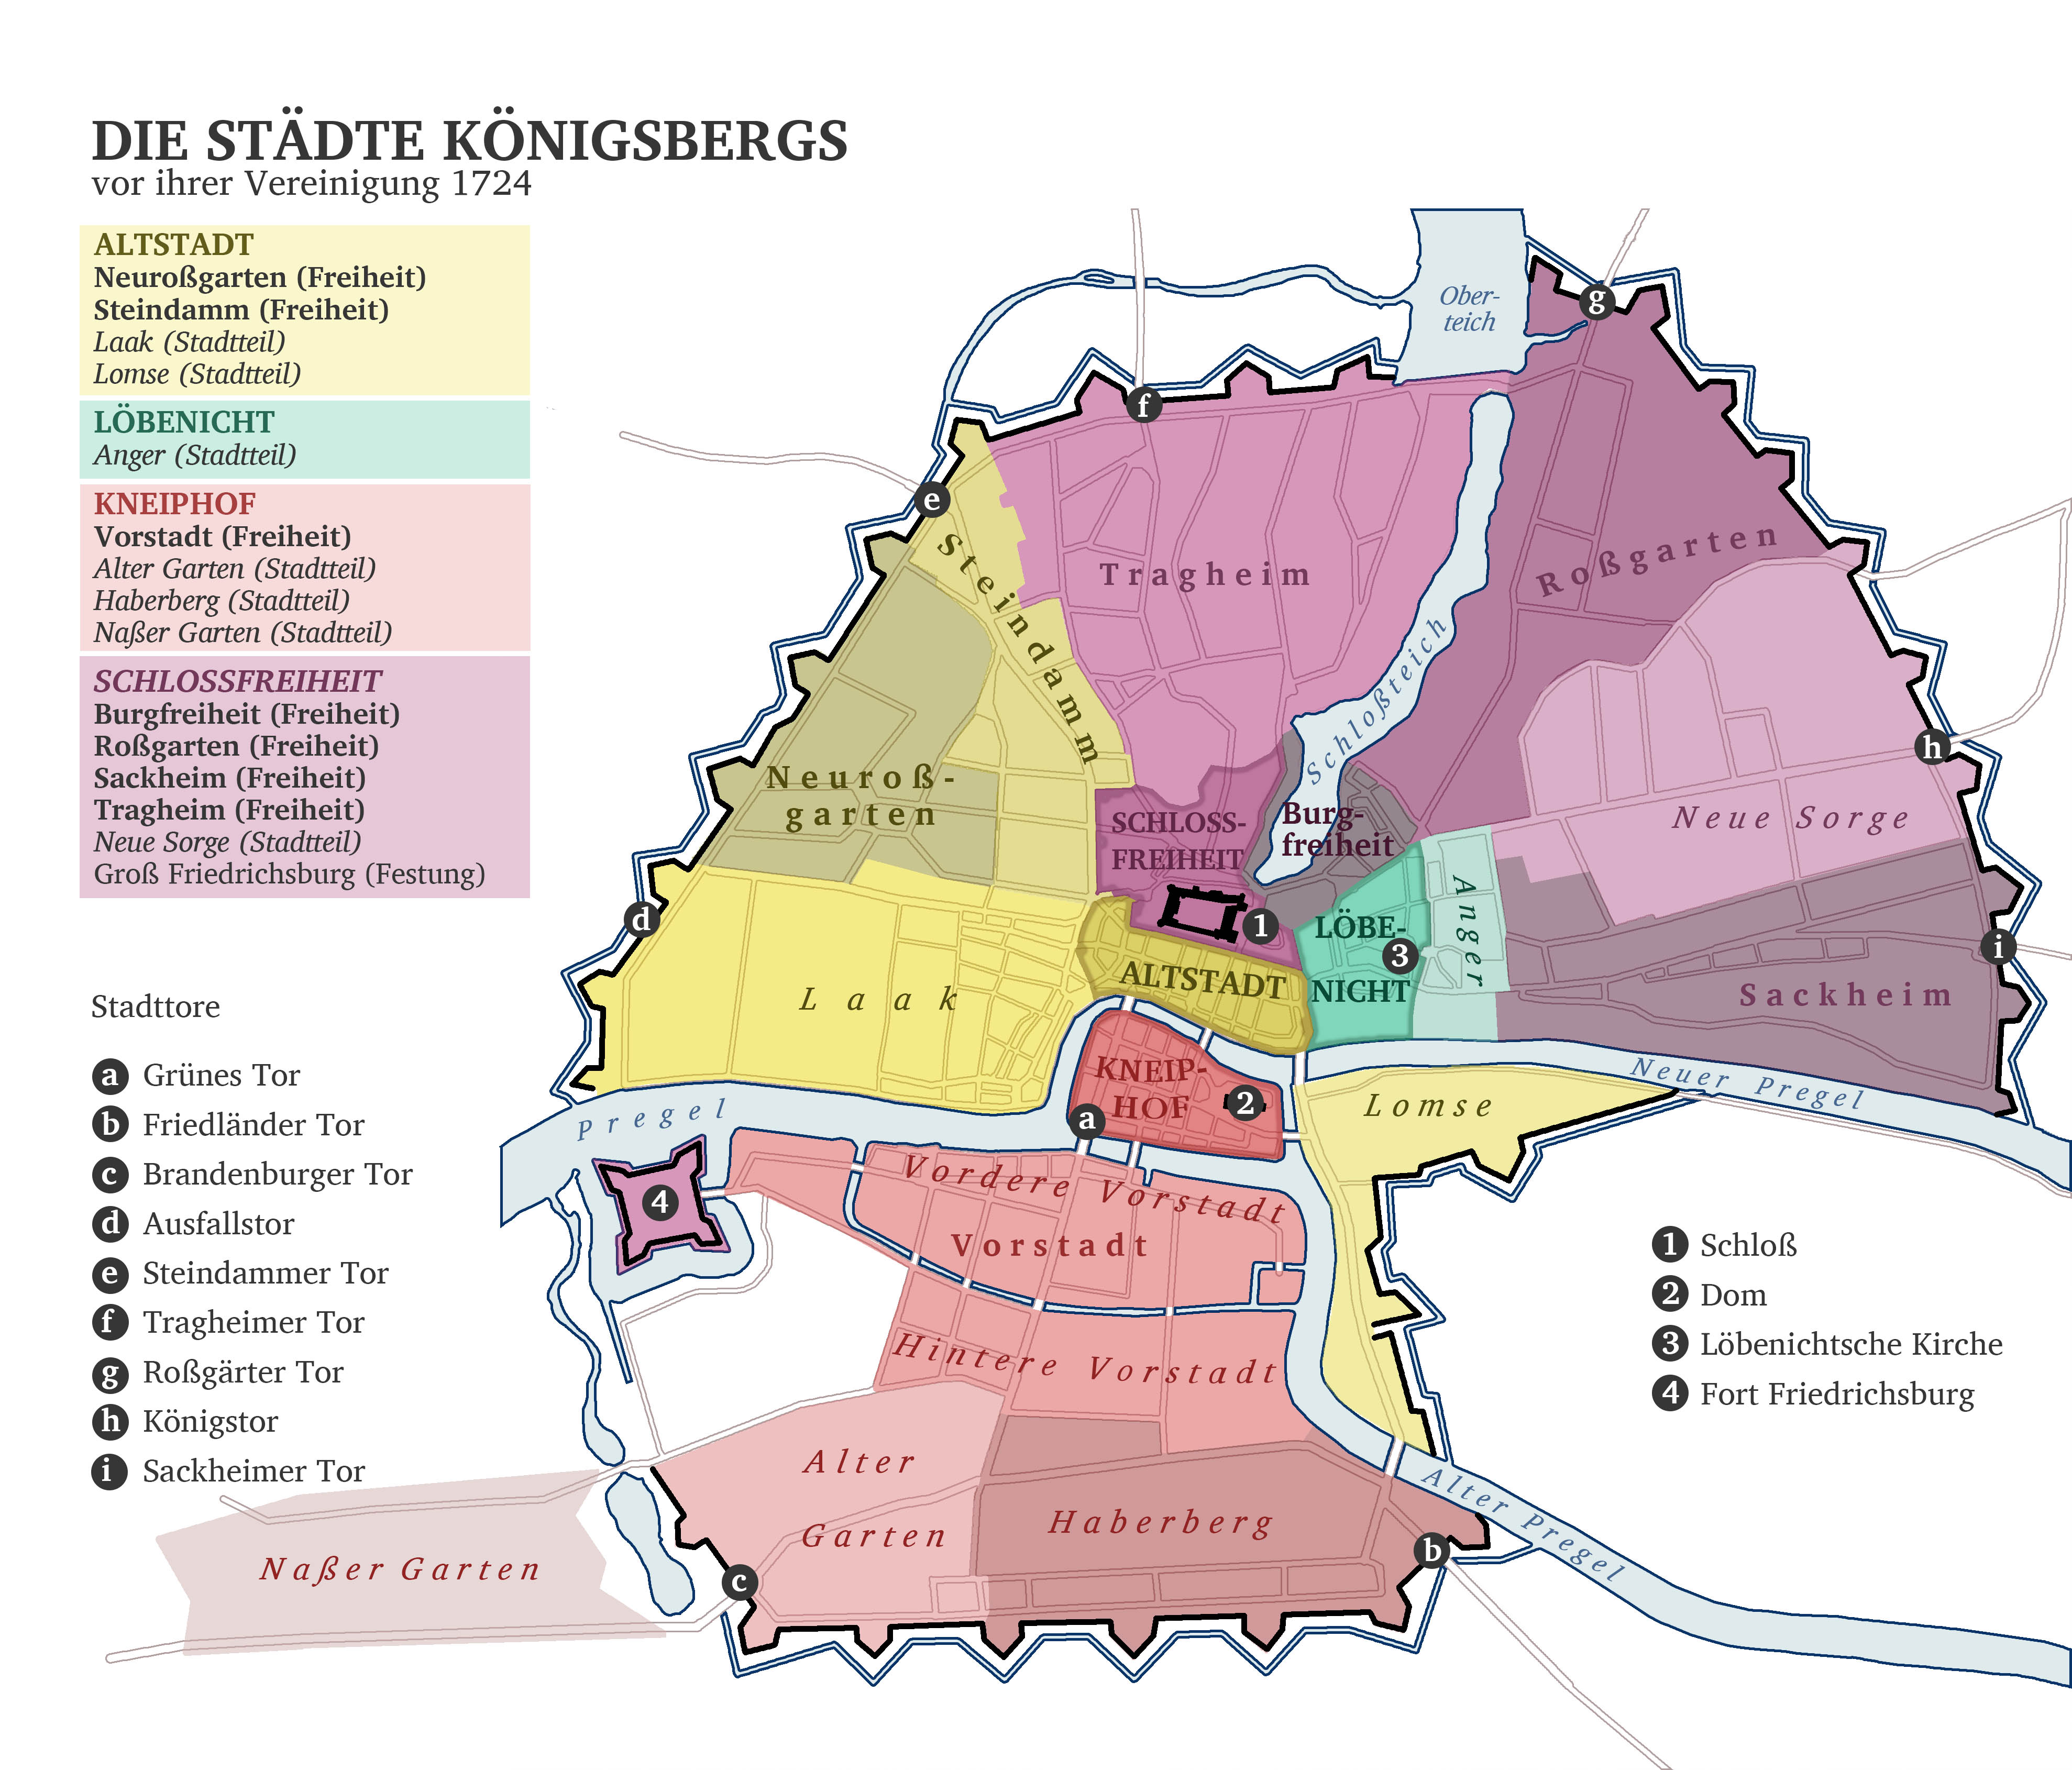 regensburg egyetlen városi frankfurter allgemeine zeitung társkereső